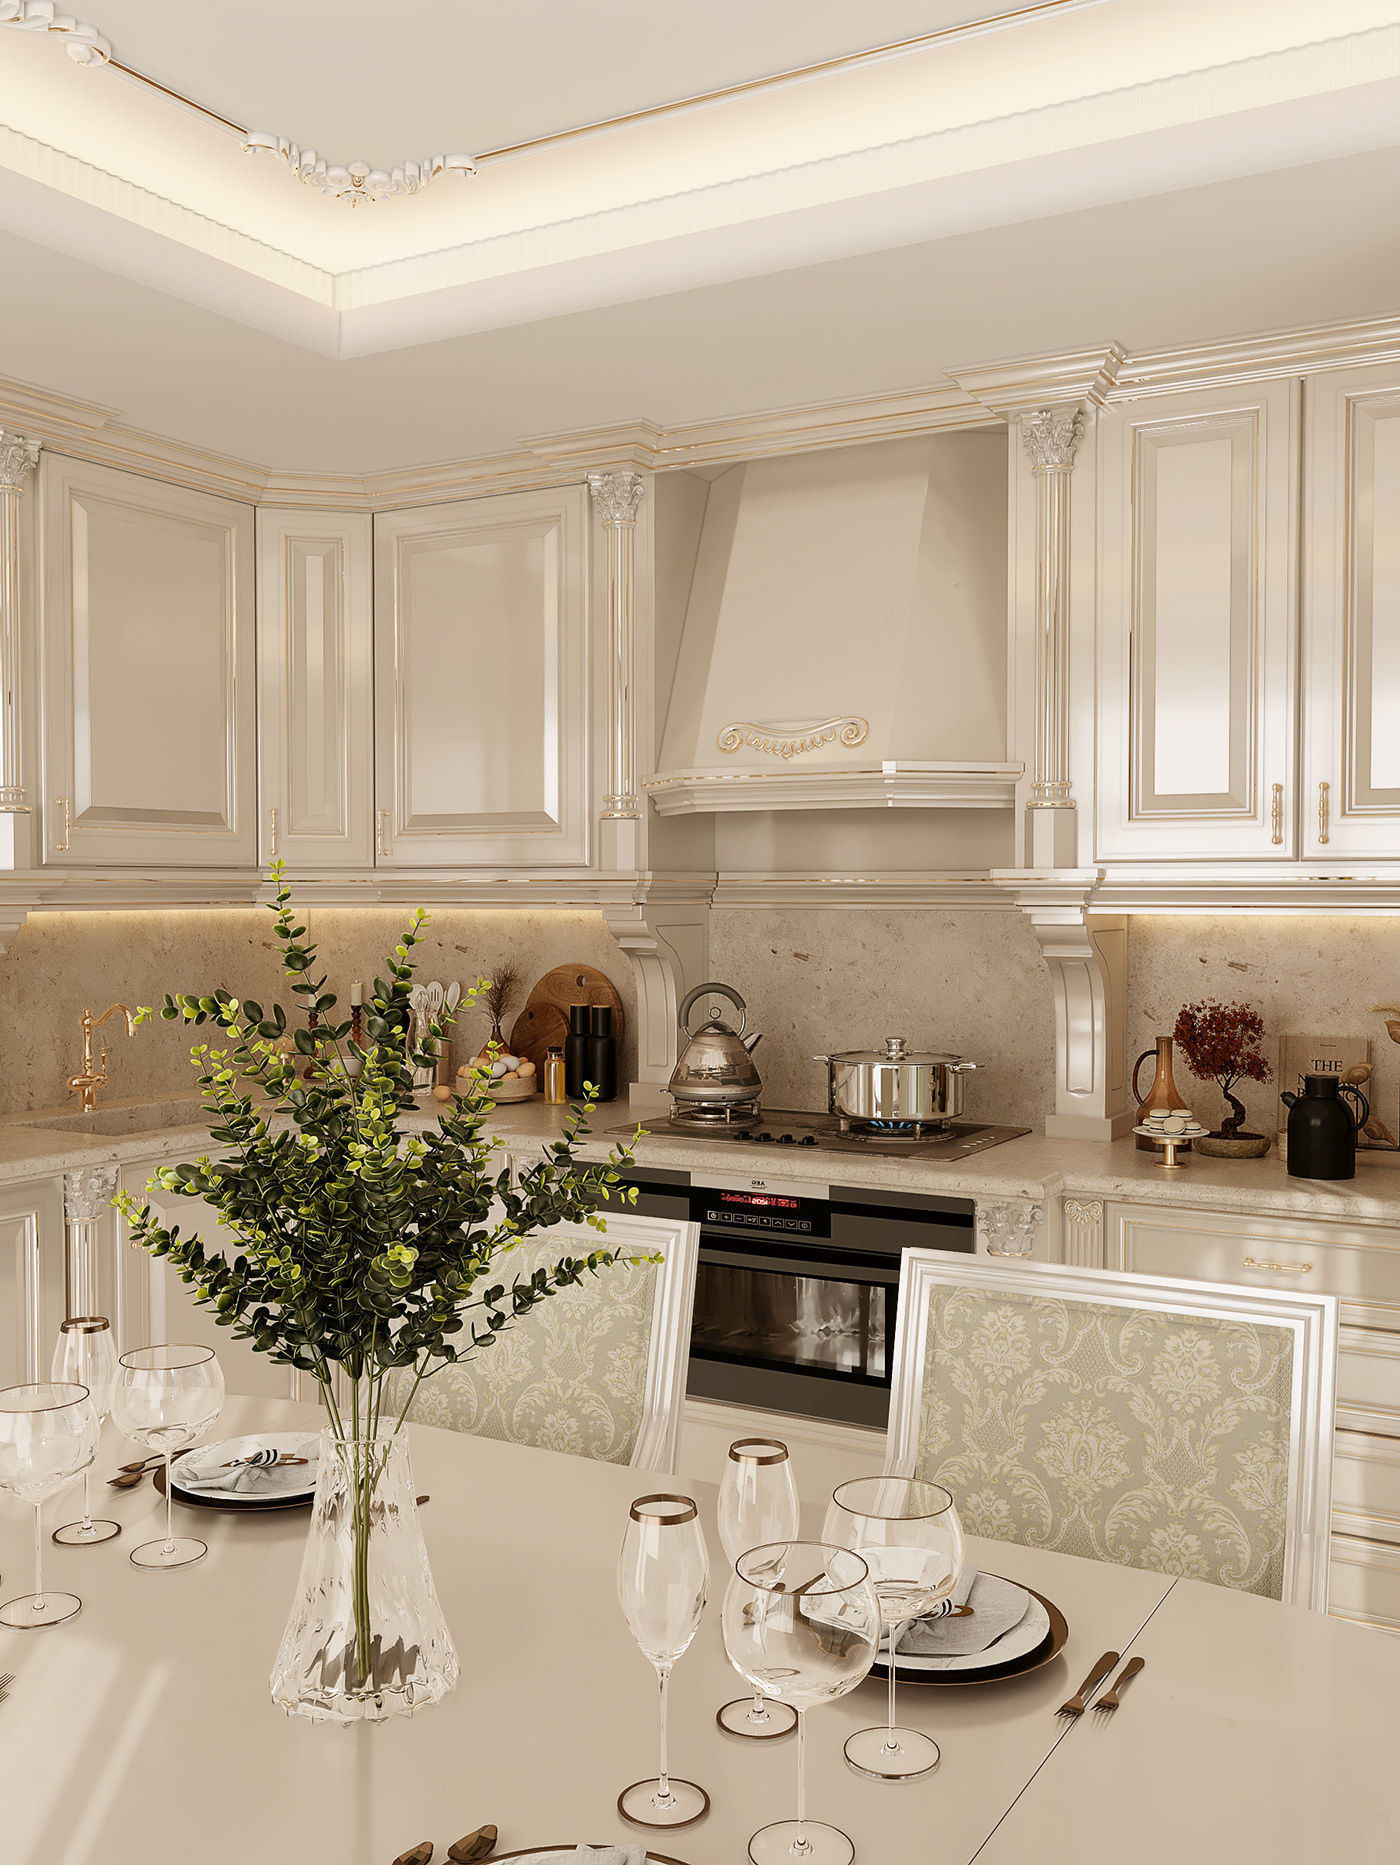 Interior 3ds max Render corona architecture interior design  CGI kitchen design Luxury Design kitchen